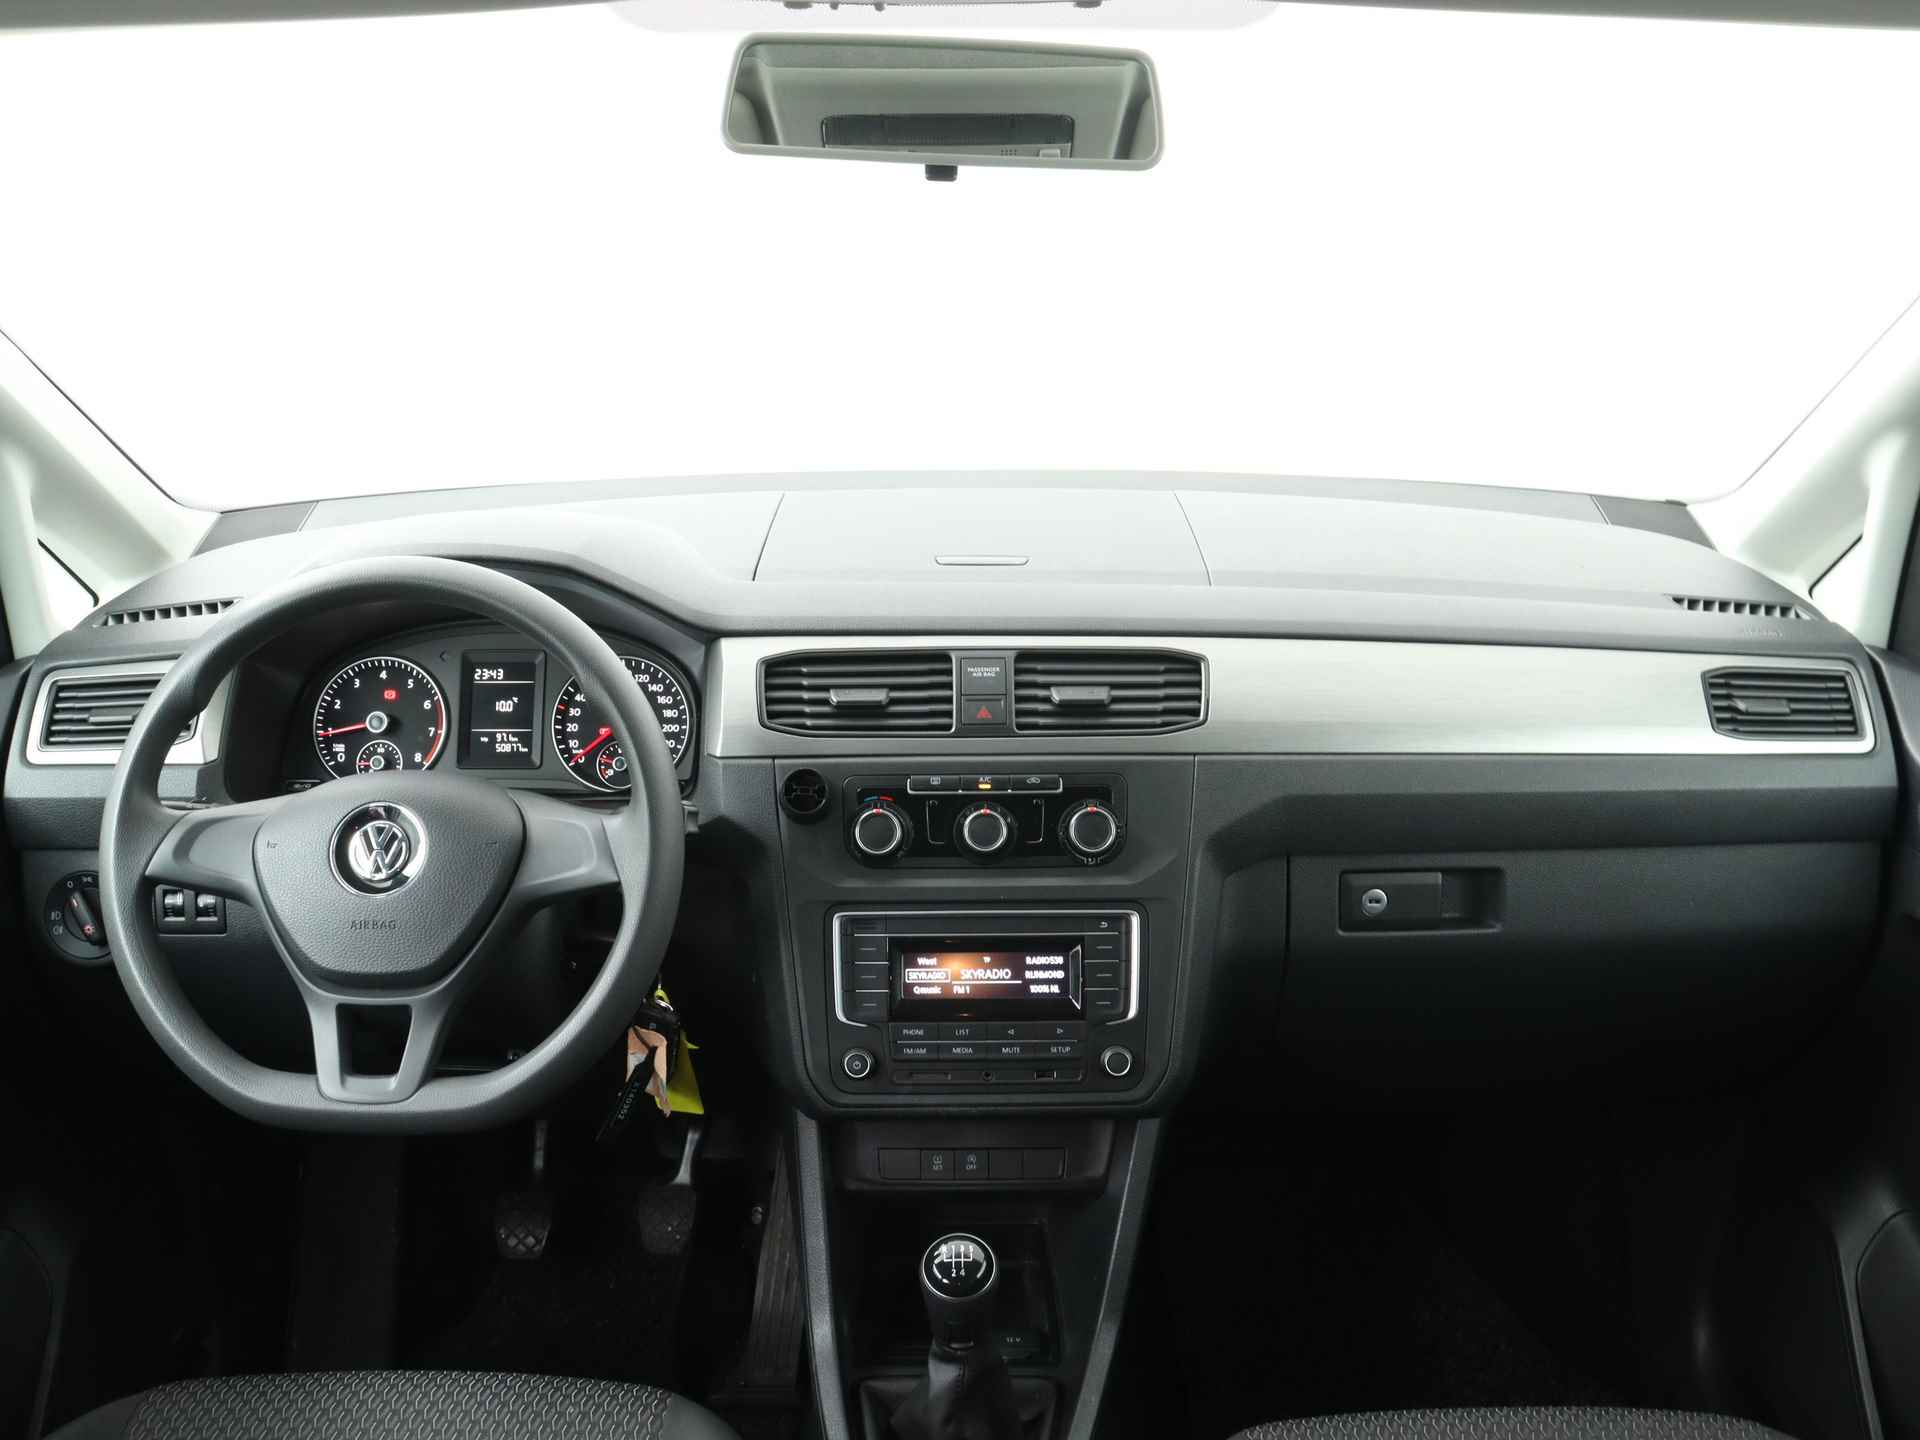 Volkswagen Caddy Maxi 1.0 TSI Trendline 5p Ingepland voor nieuwe bodemverlaging t.b.v. rolstoelvervoer (Prijs incl. bodemverlaging) - 6/36